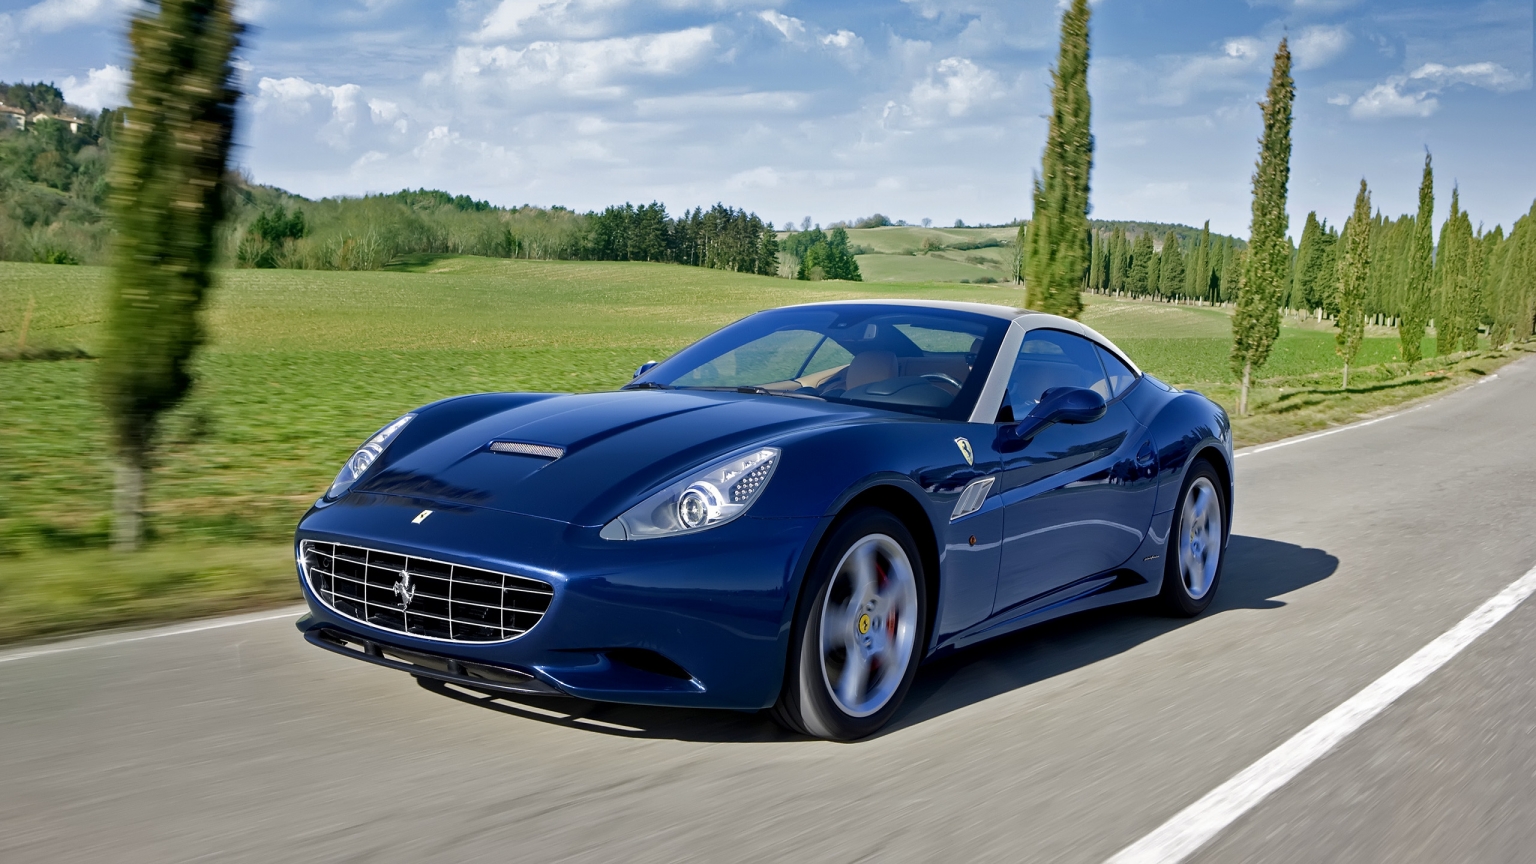 Blue Ferrari California for 1536 x 864 HDTV resolution